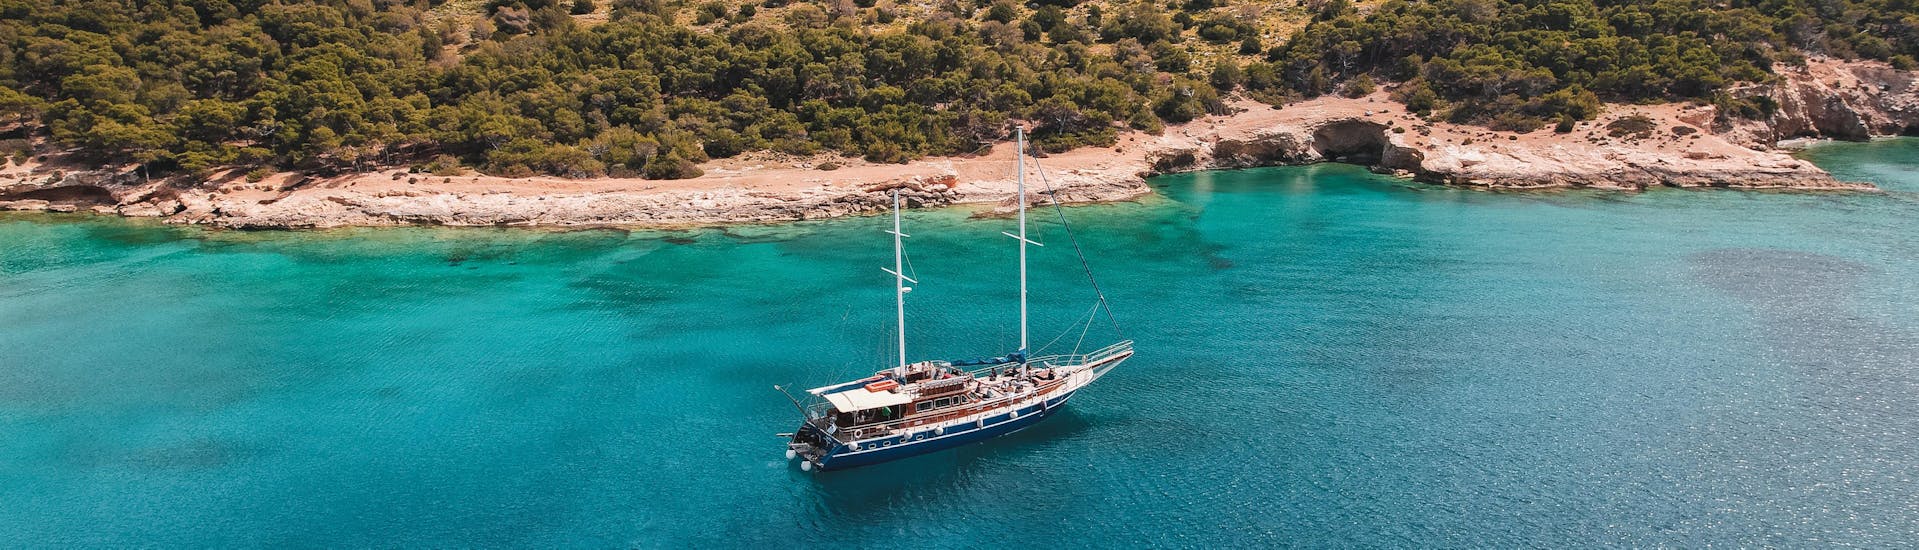 Das Boot in der Bucht der Insel Moni während der Bootstour von Athen nach Aegina, Moni und Agistri mit All Day Cruise Athen.